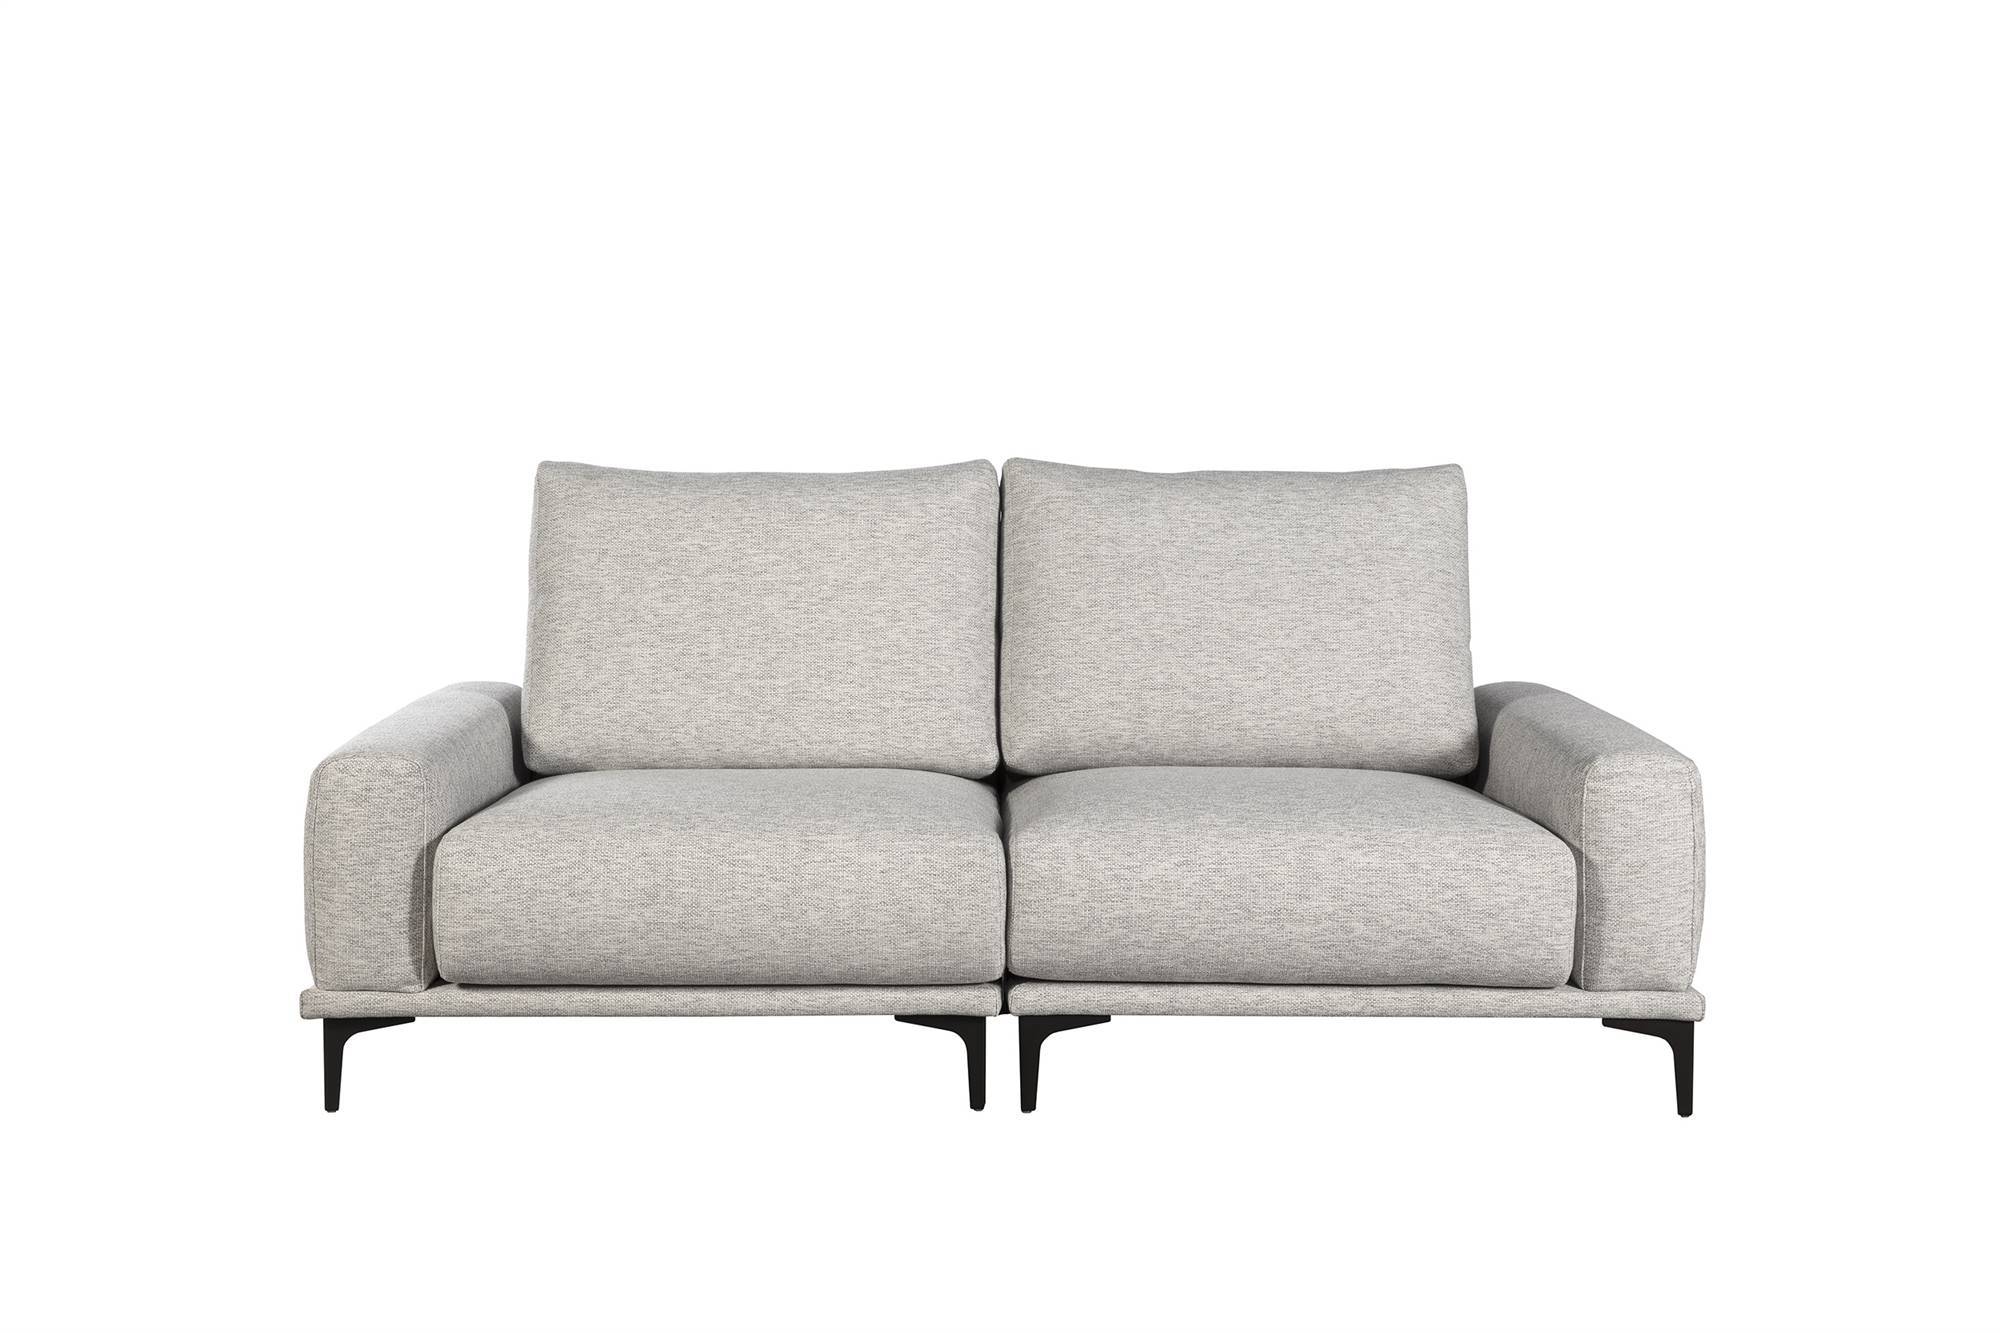 Sofá tapizado de 3 plazas Iver Room - El Corte Inglés 1.175€